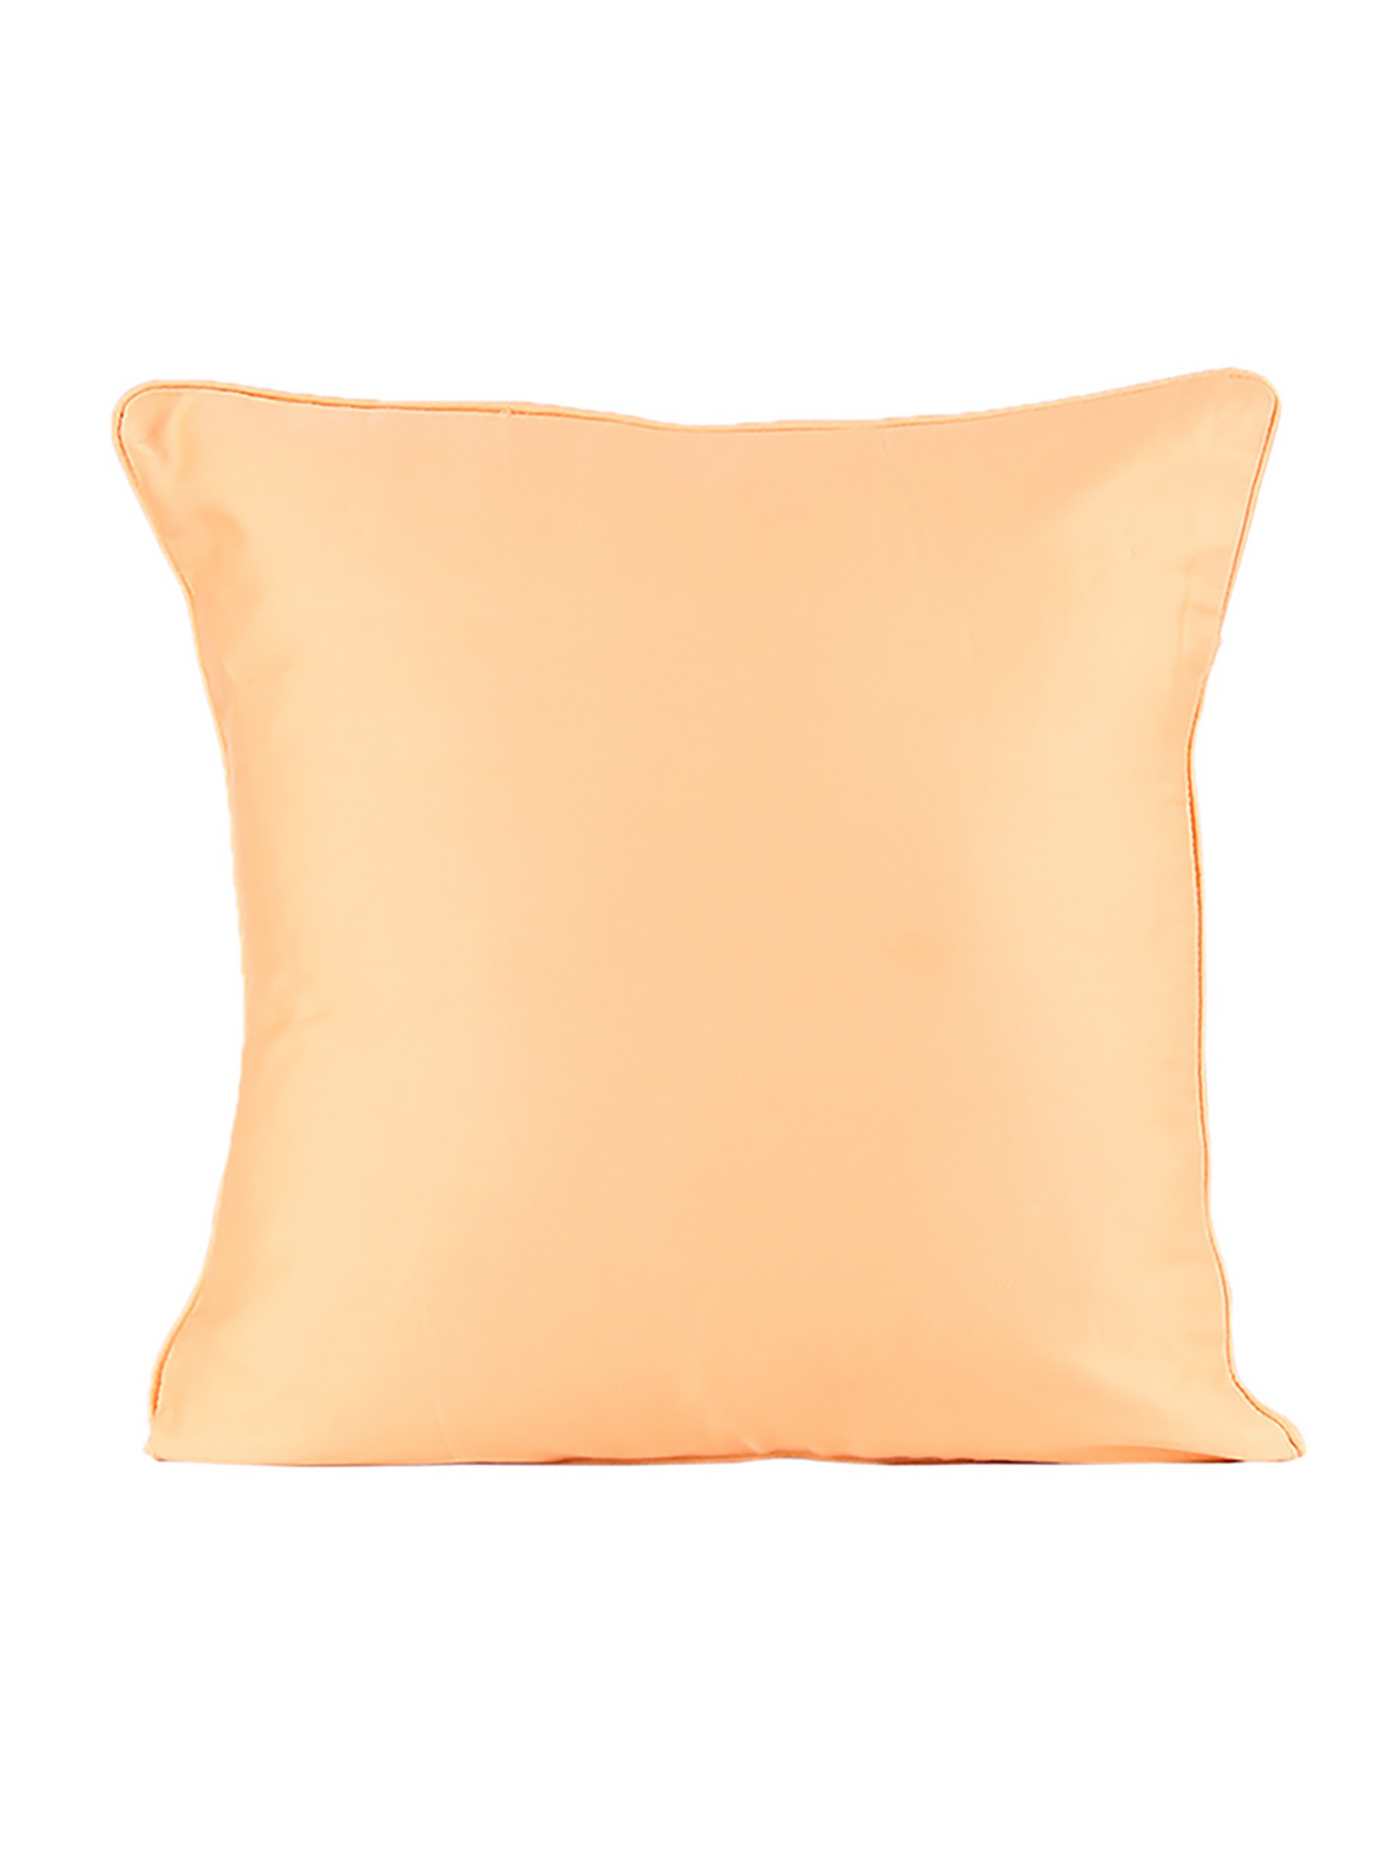 Rangrag Cushion Cover (Orange)